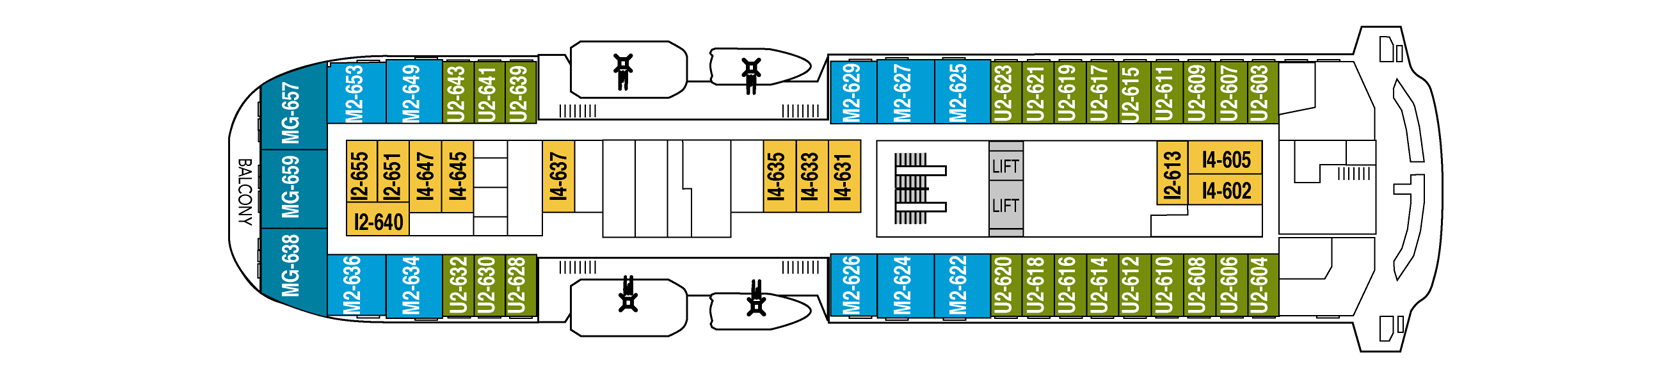 1548636376.0747_d270_Hurtigruten MS Fram Deck Plans Deck 6.png